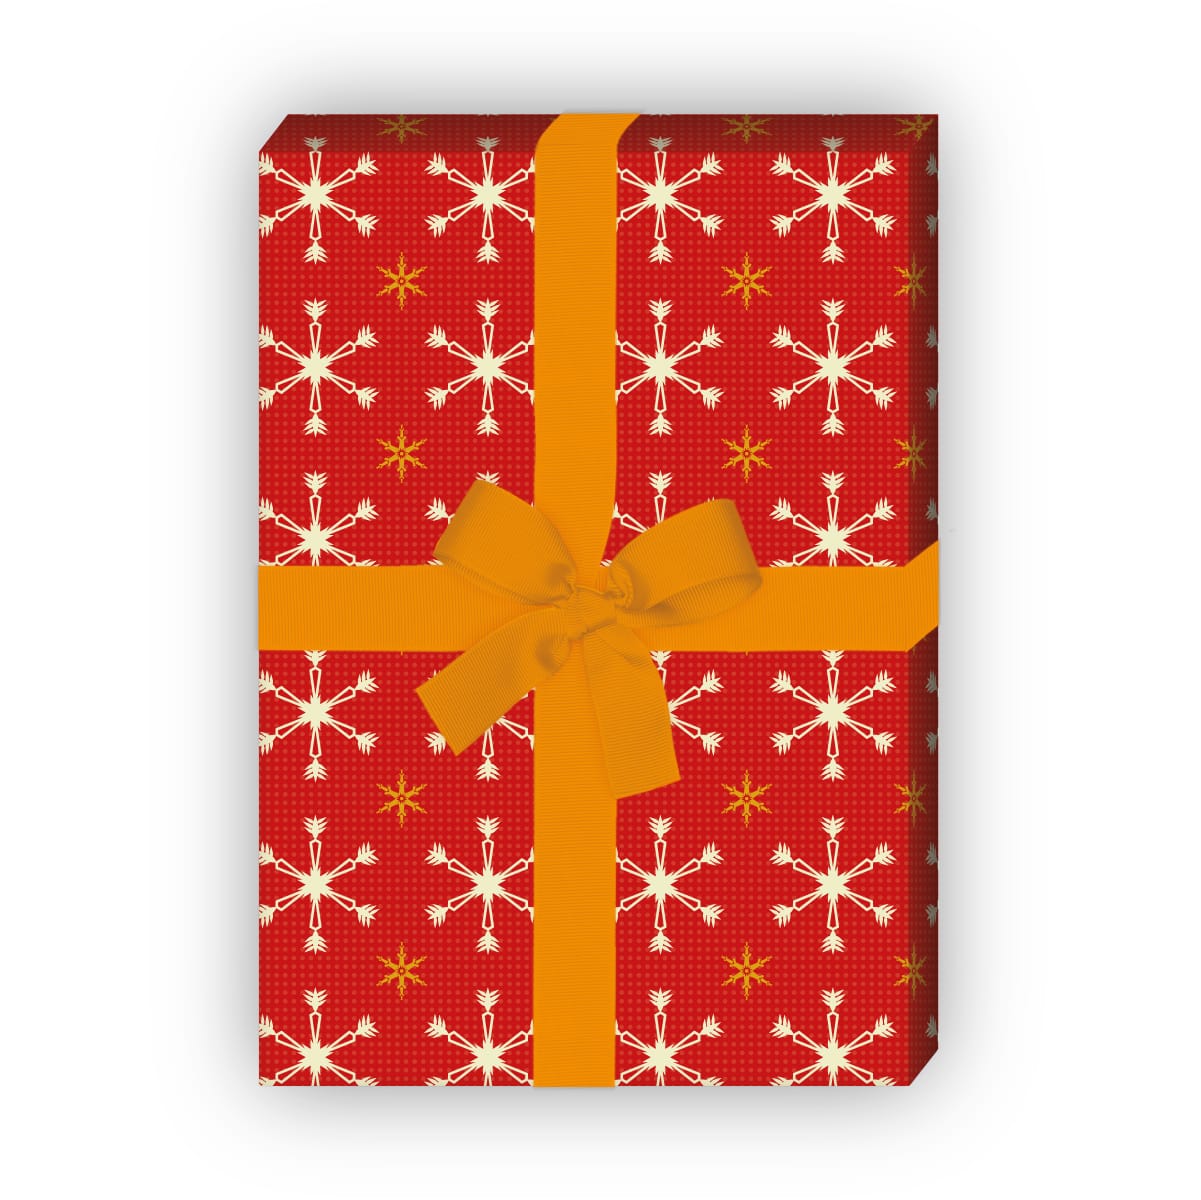 Weihnachtsgeschenke verpacken mit: Weihnachts Geschenkpapier mit Sternen Muster (4 Bögen) in rot jetzt online kaufen